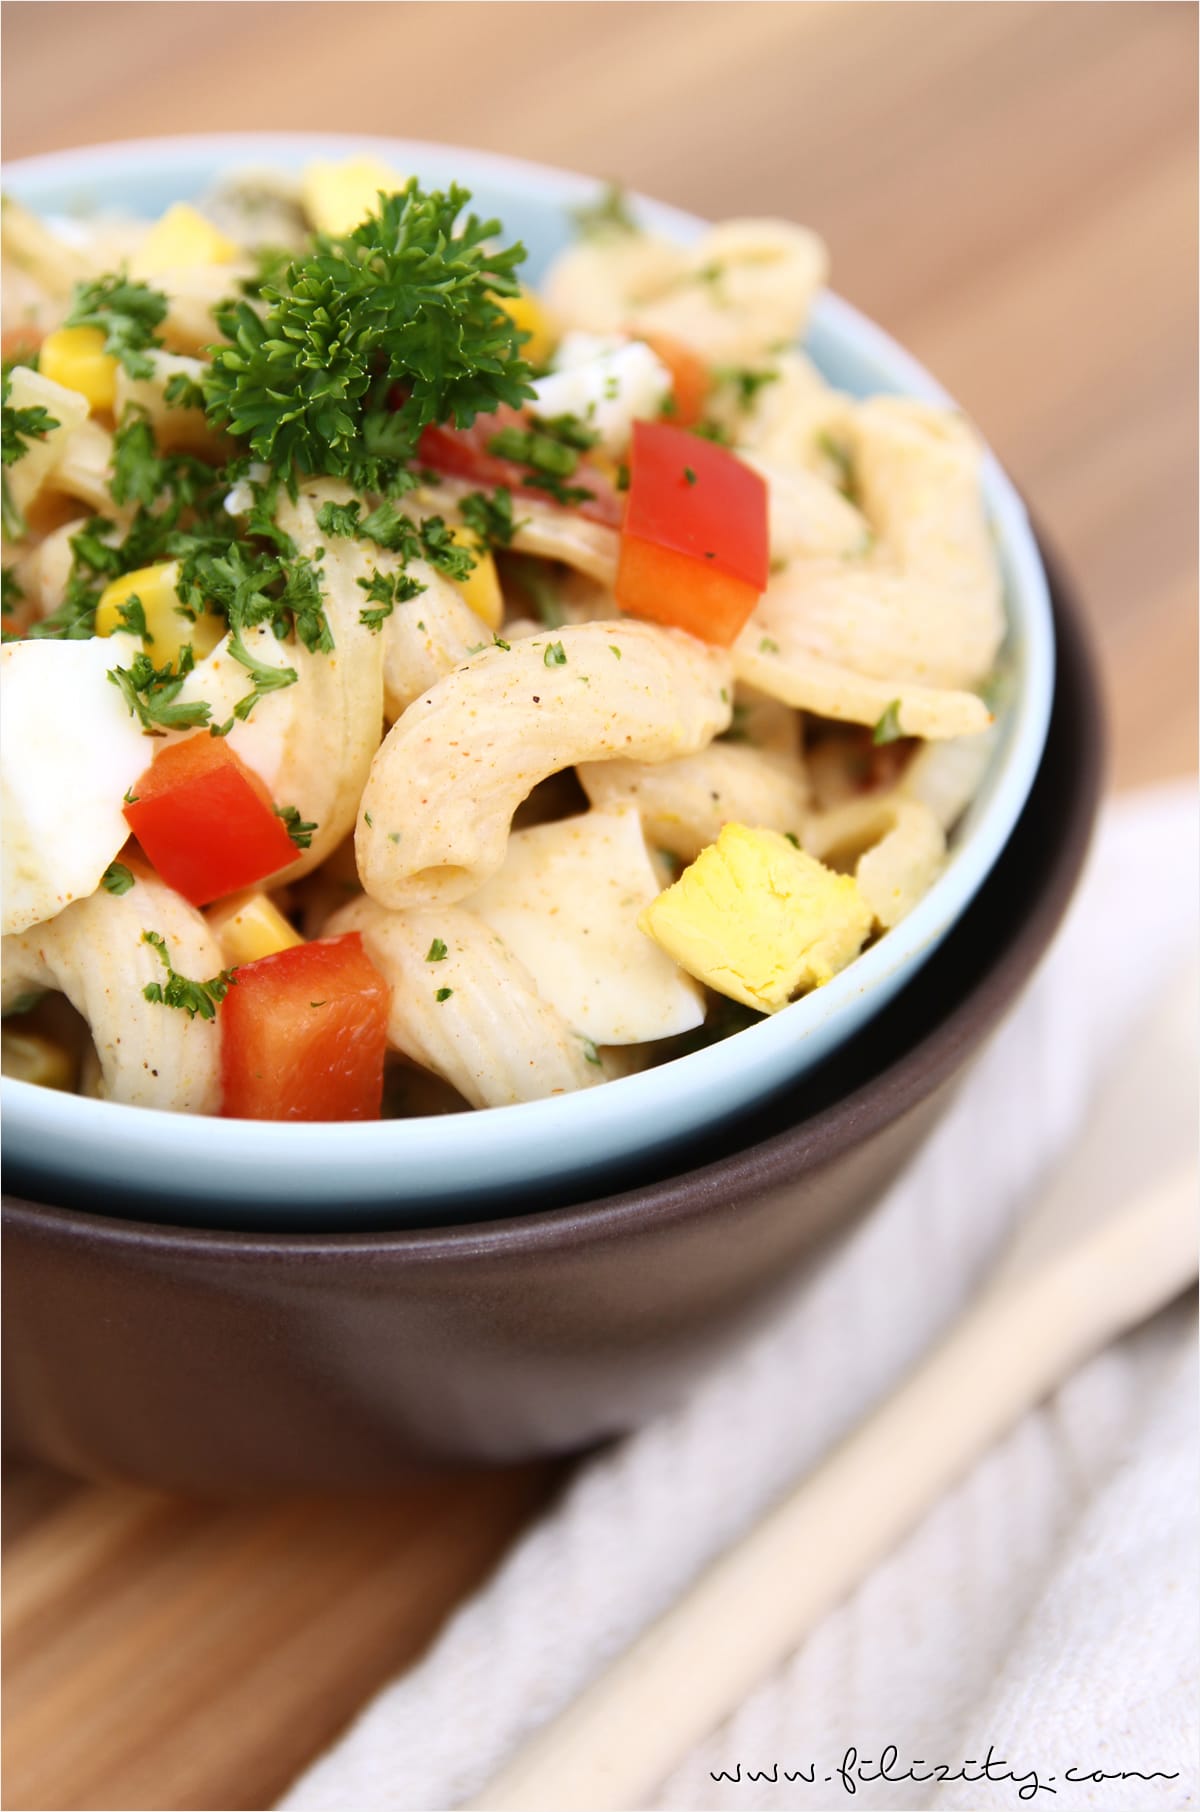 Nudelsalat mit Curry als Partyfood oder Beilage zum Grillen | Filizity.com | Food-Blog aus dem Rheinland #partyfood #salat #silvester #nye